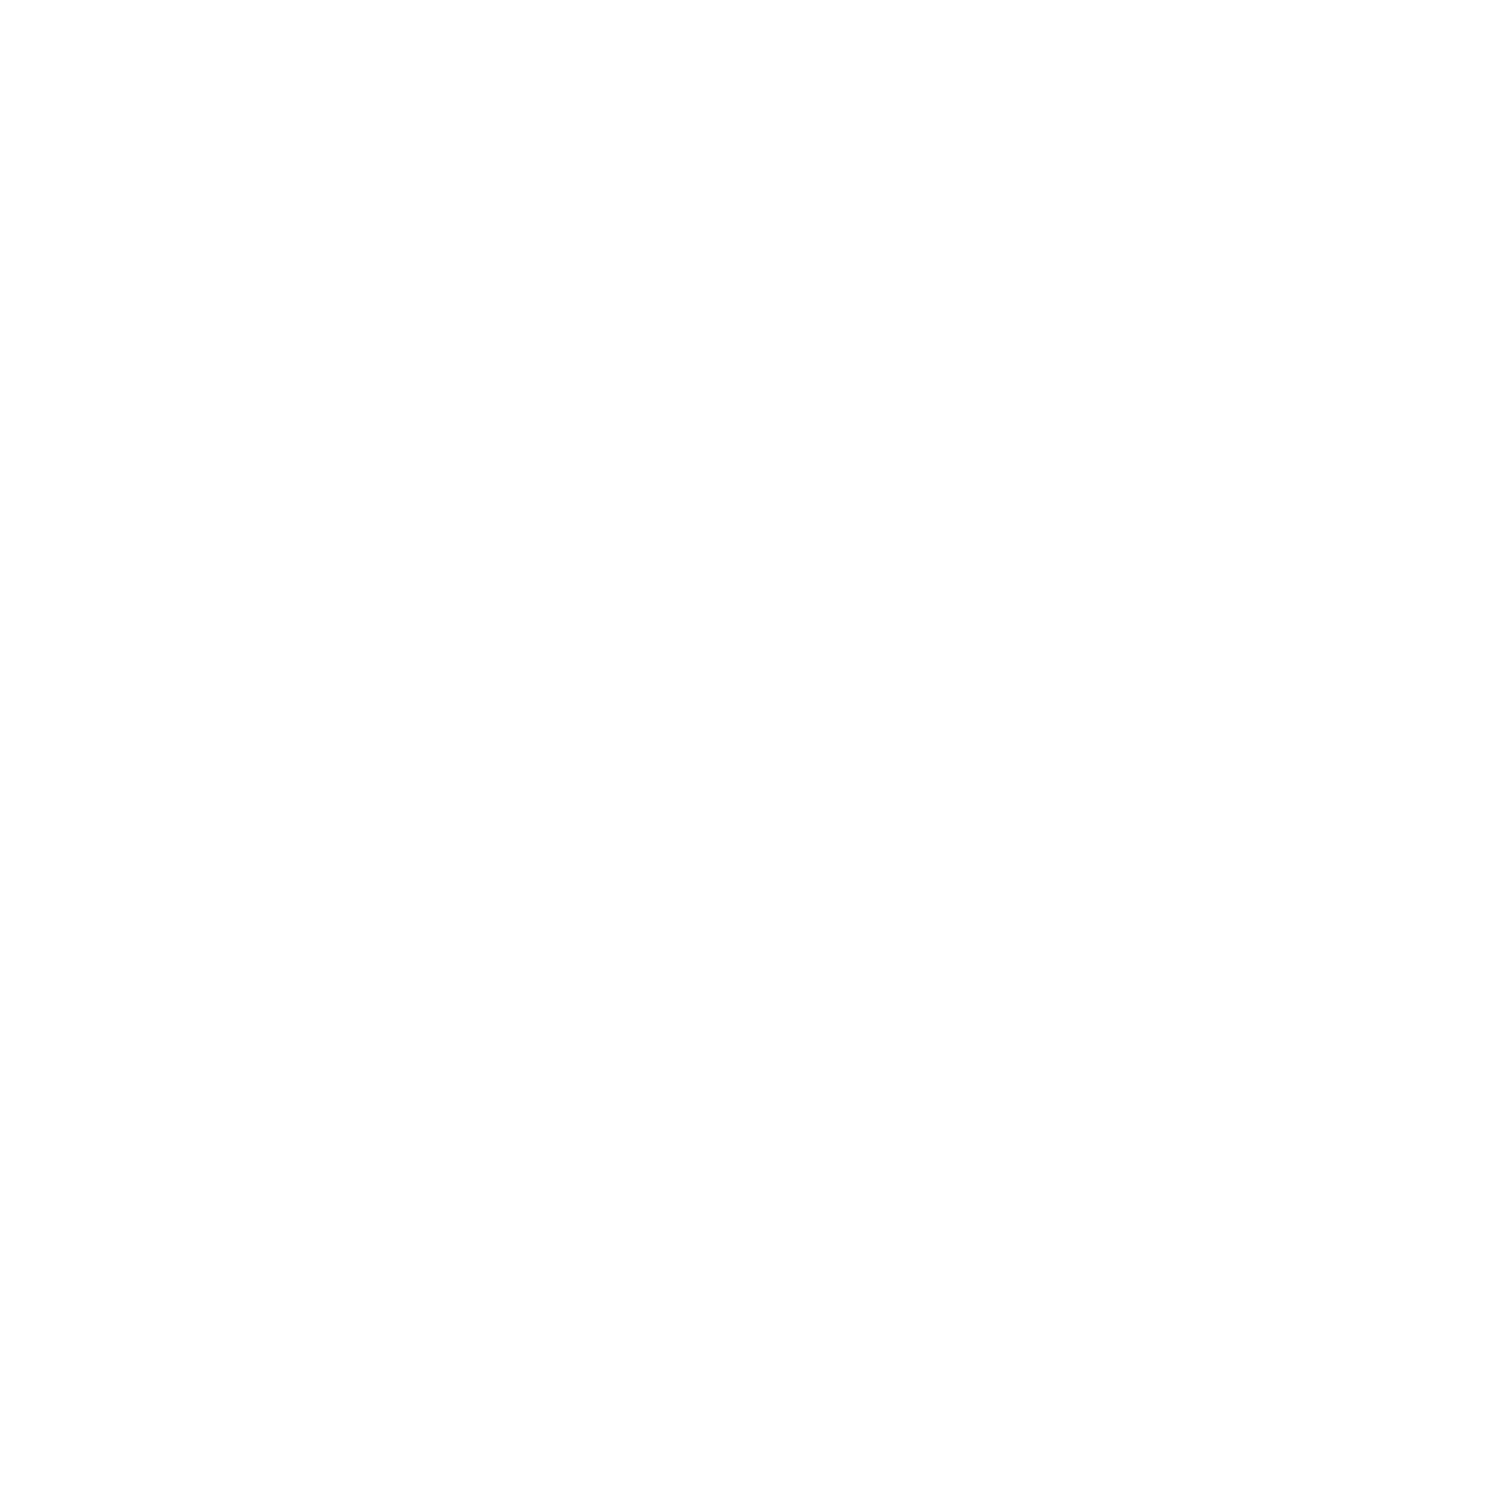 Old School Genetics